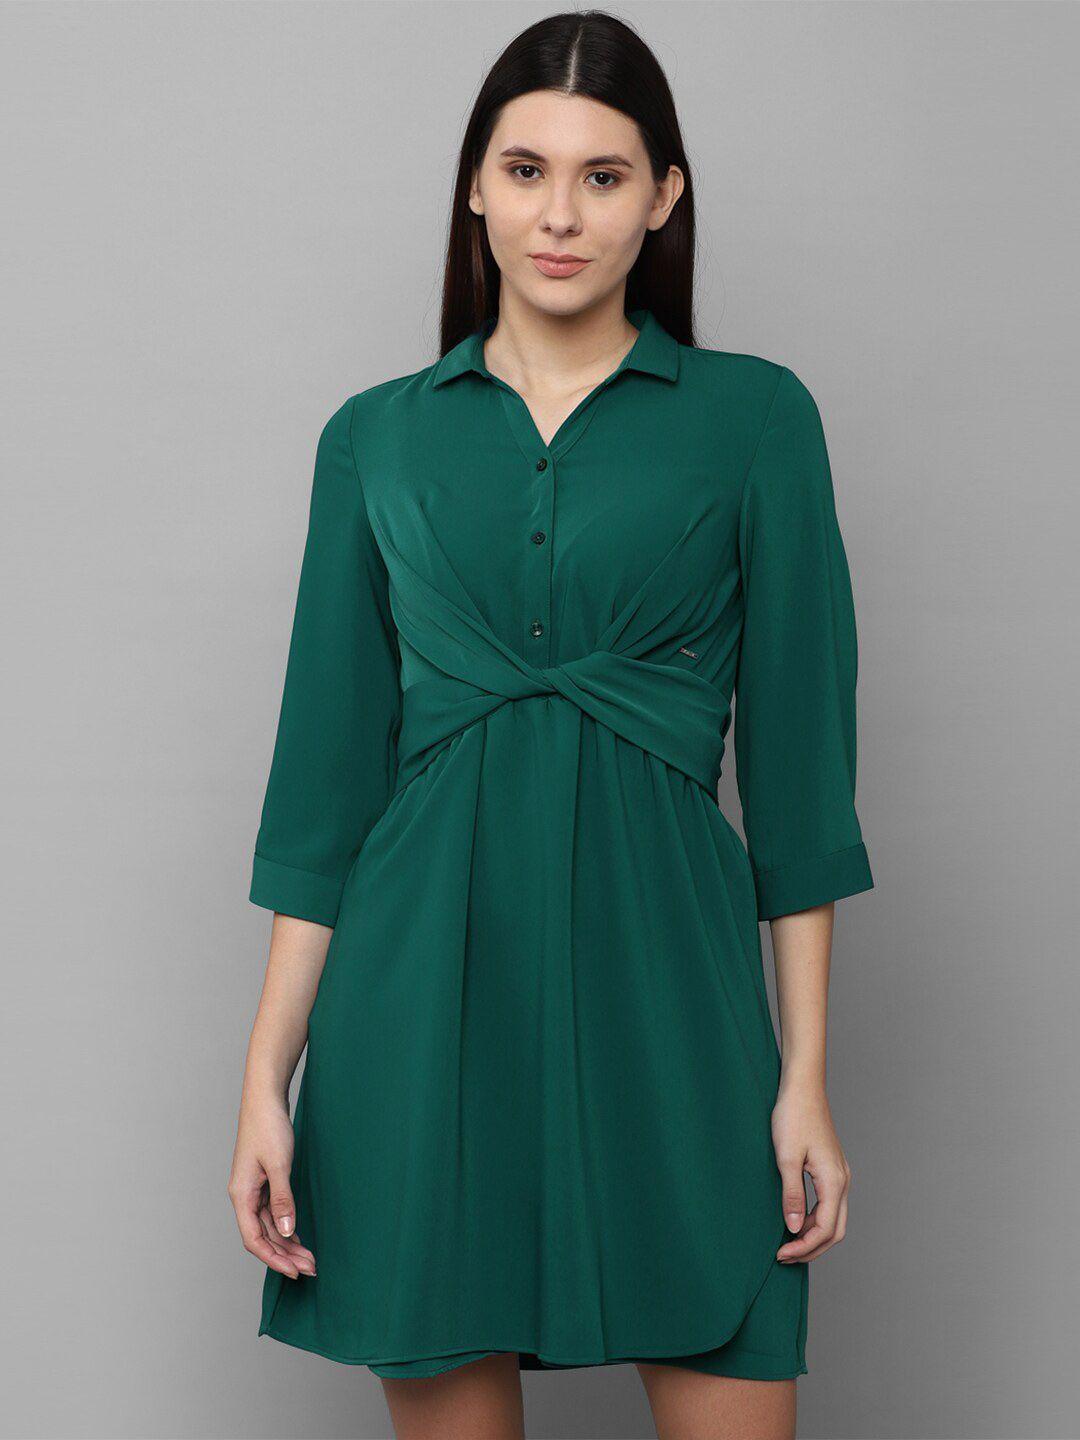 allen-solly-woman-green-shirt-dress